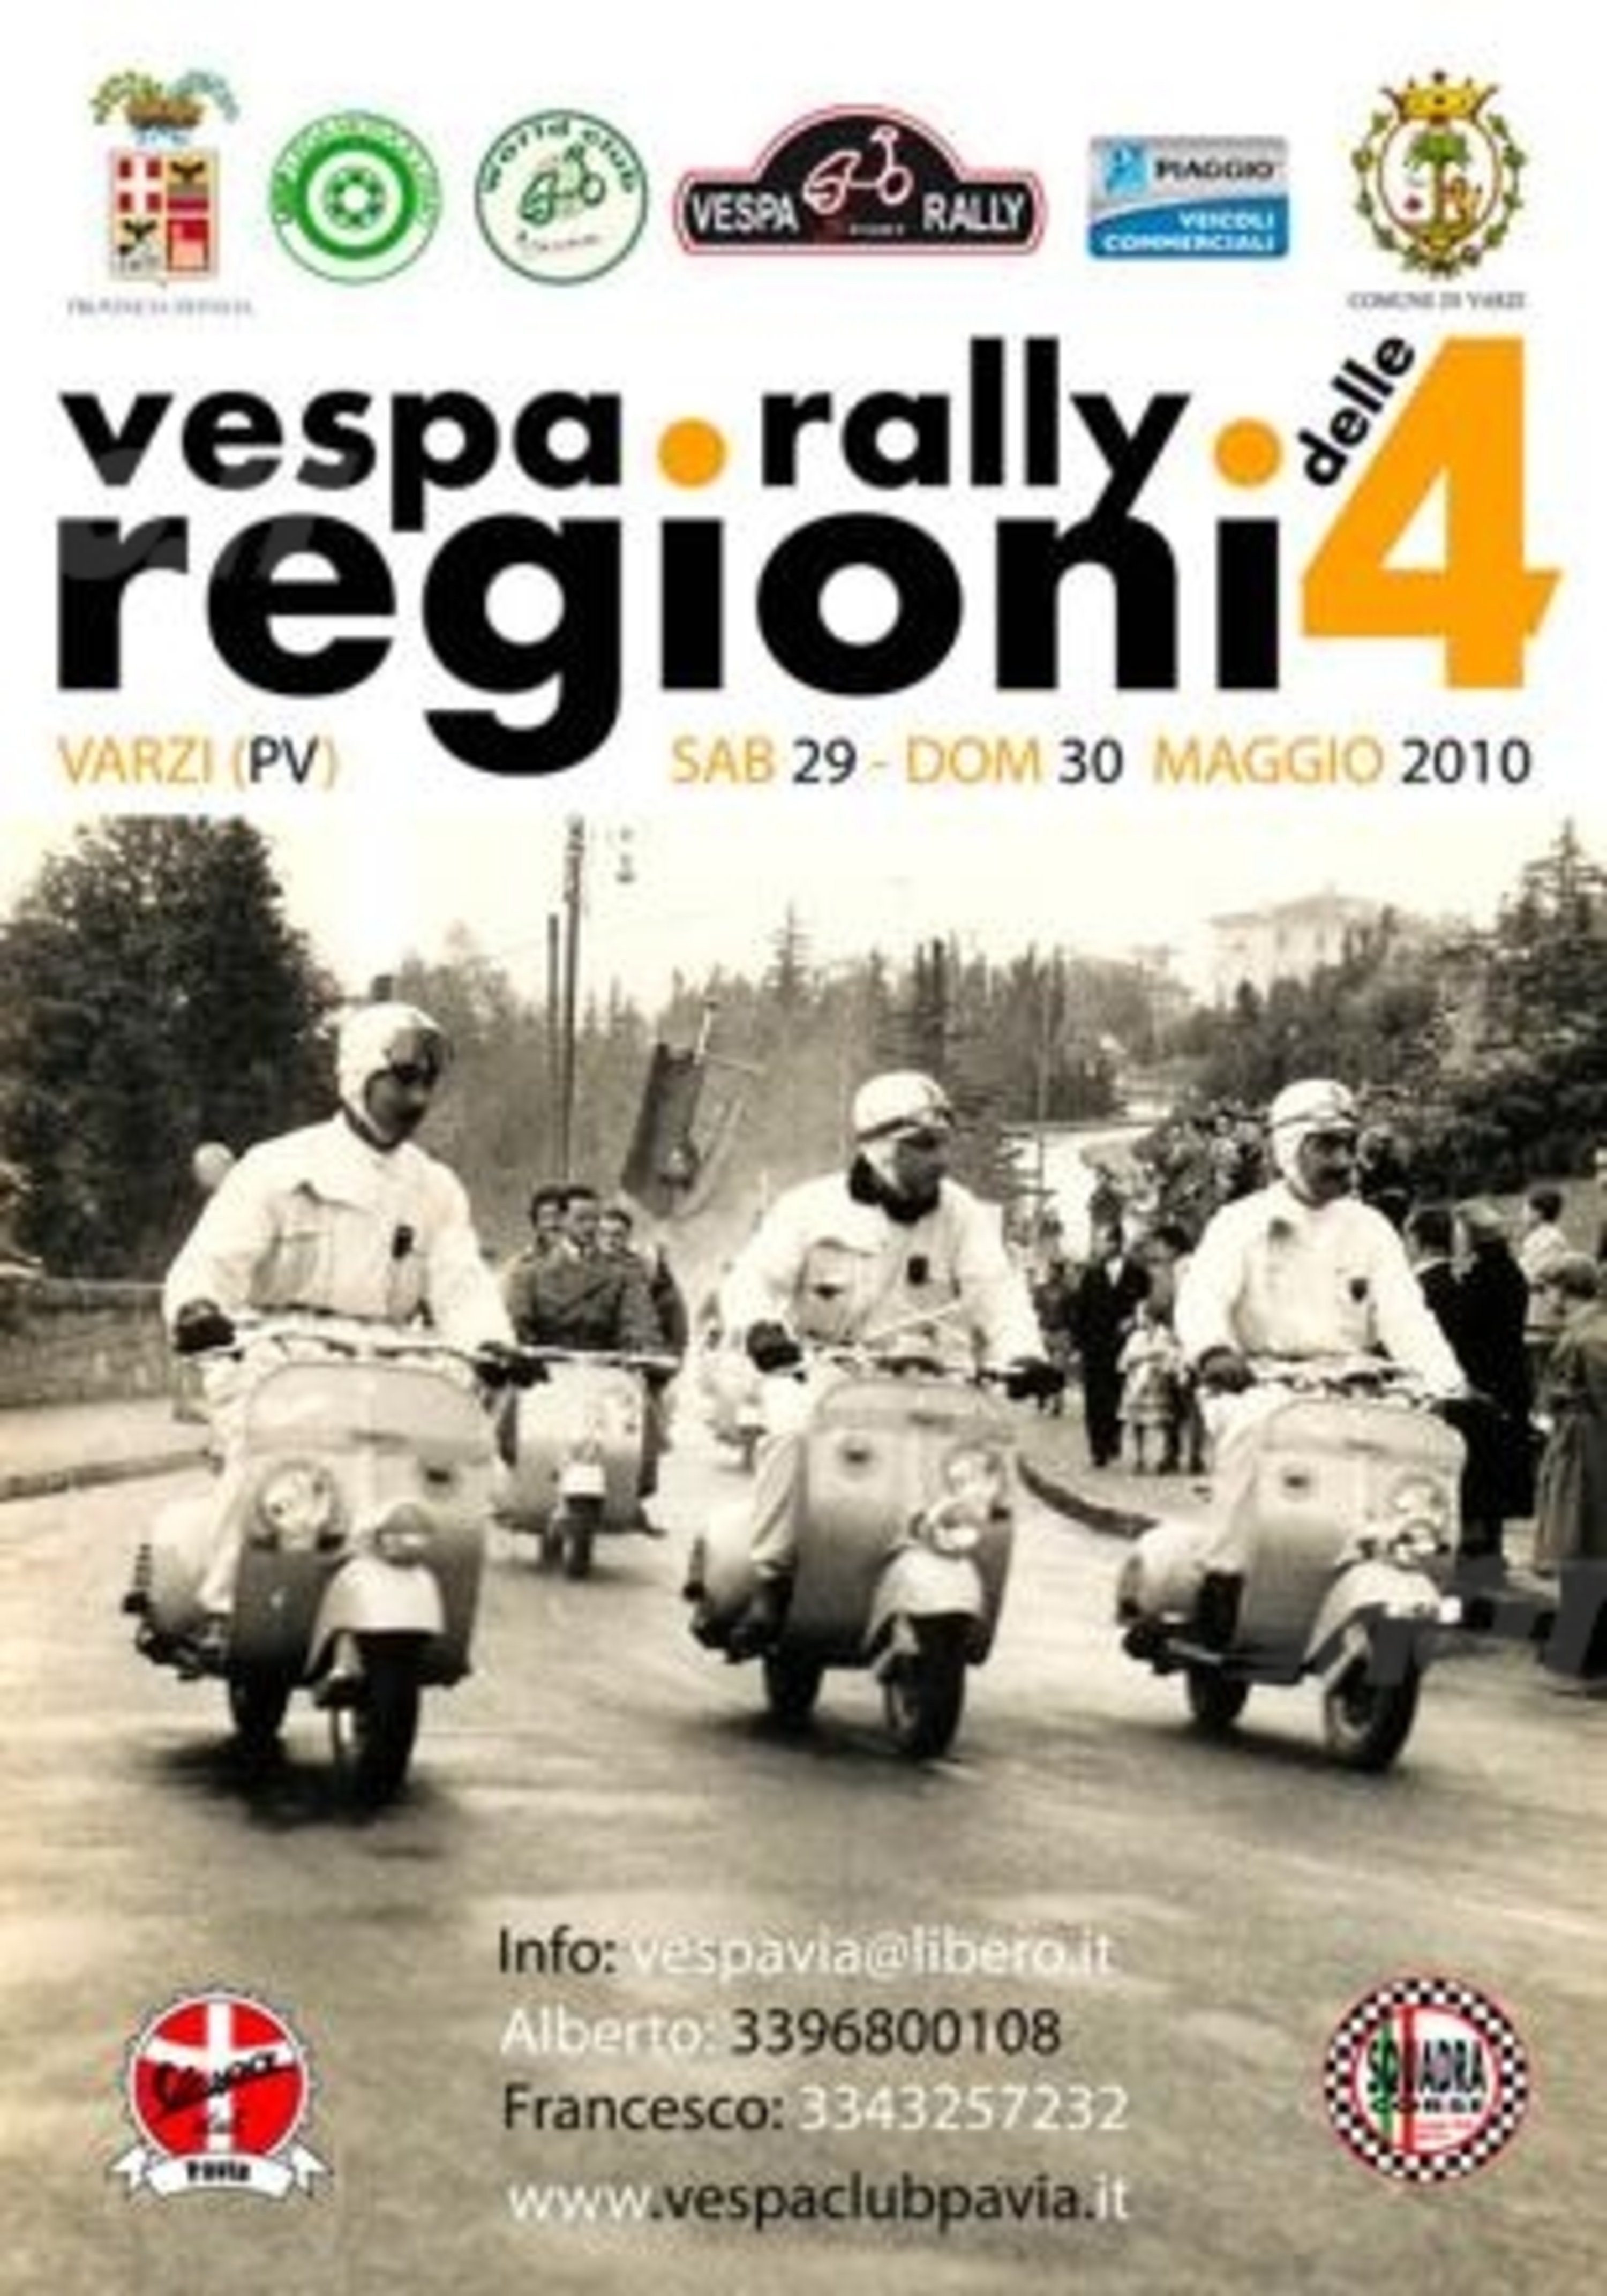 A Varzi la prima edizione del Vespa Rally delle 4 Regioni 